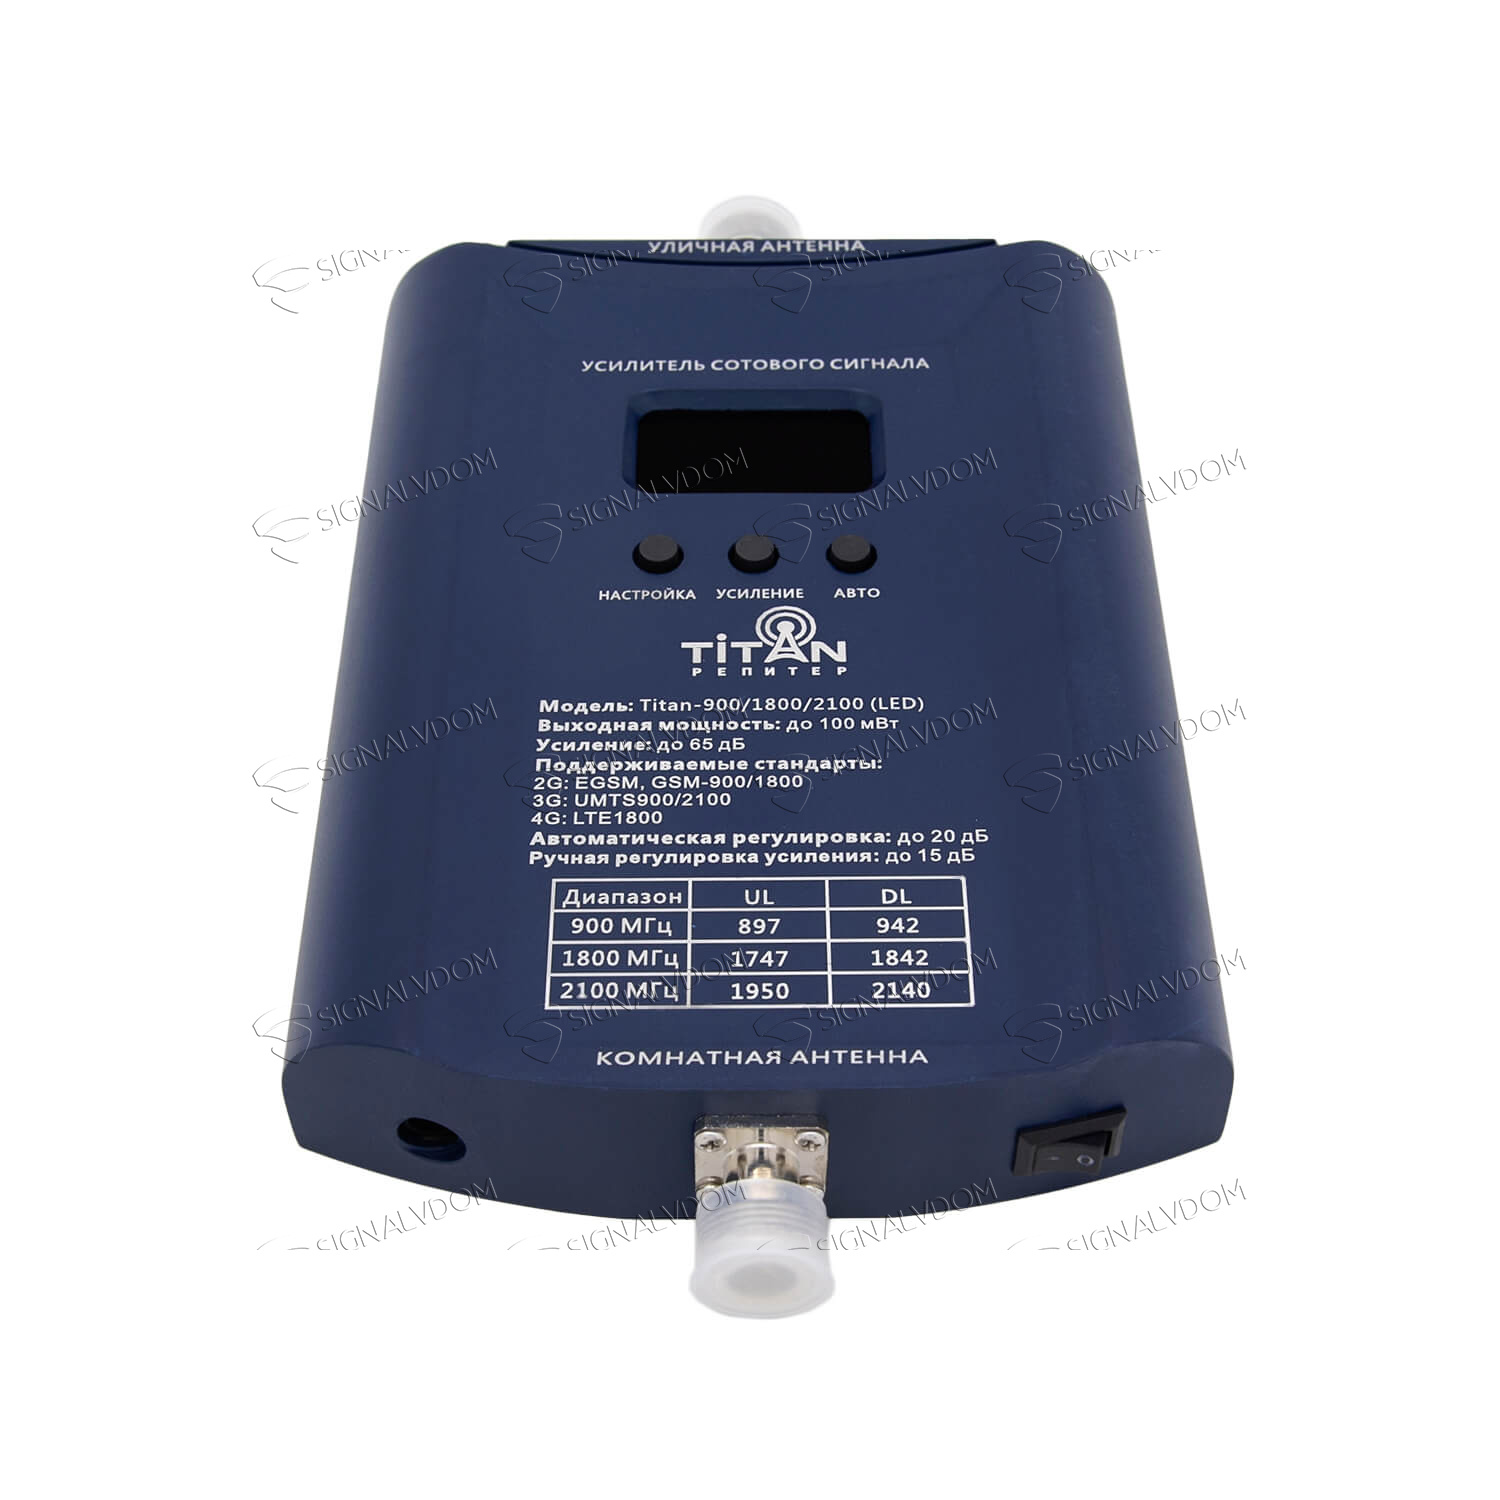 Усилитель сигнала Titan-900/1800/2100 комплект (LED) - 5